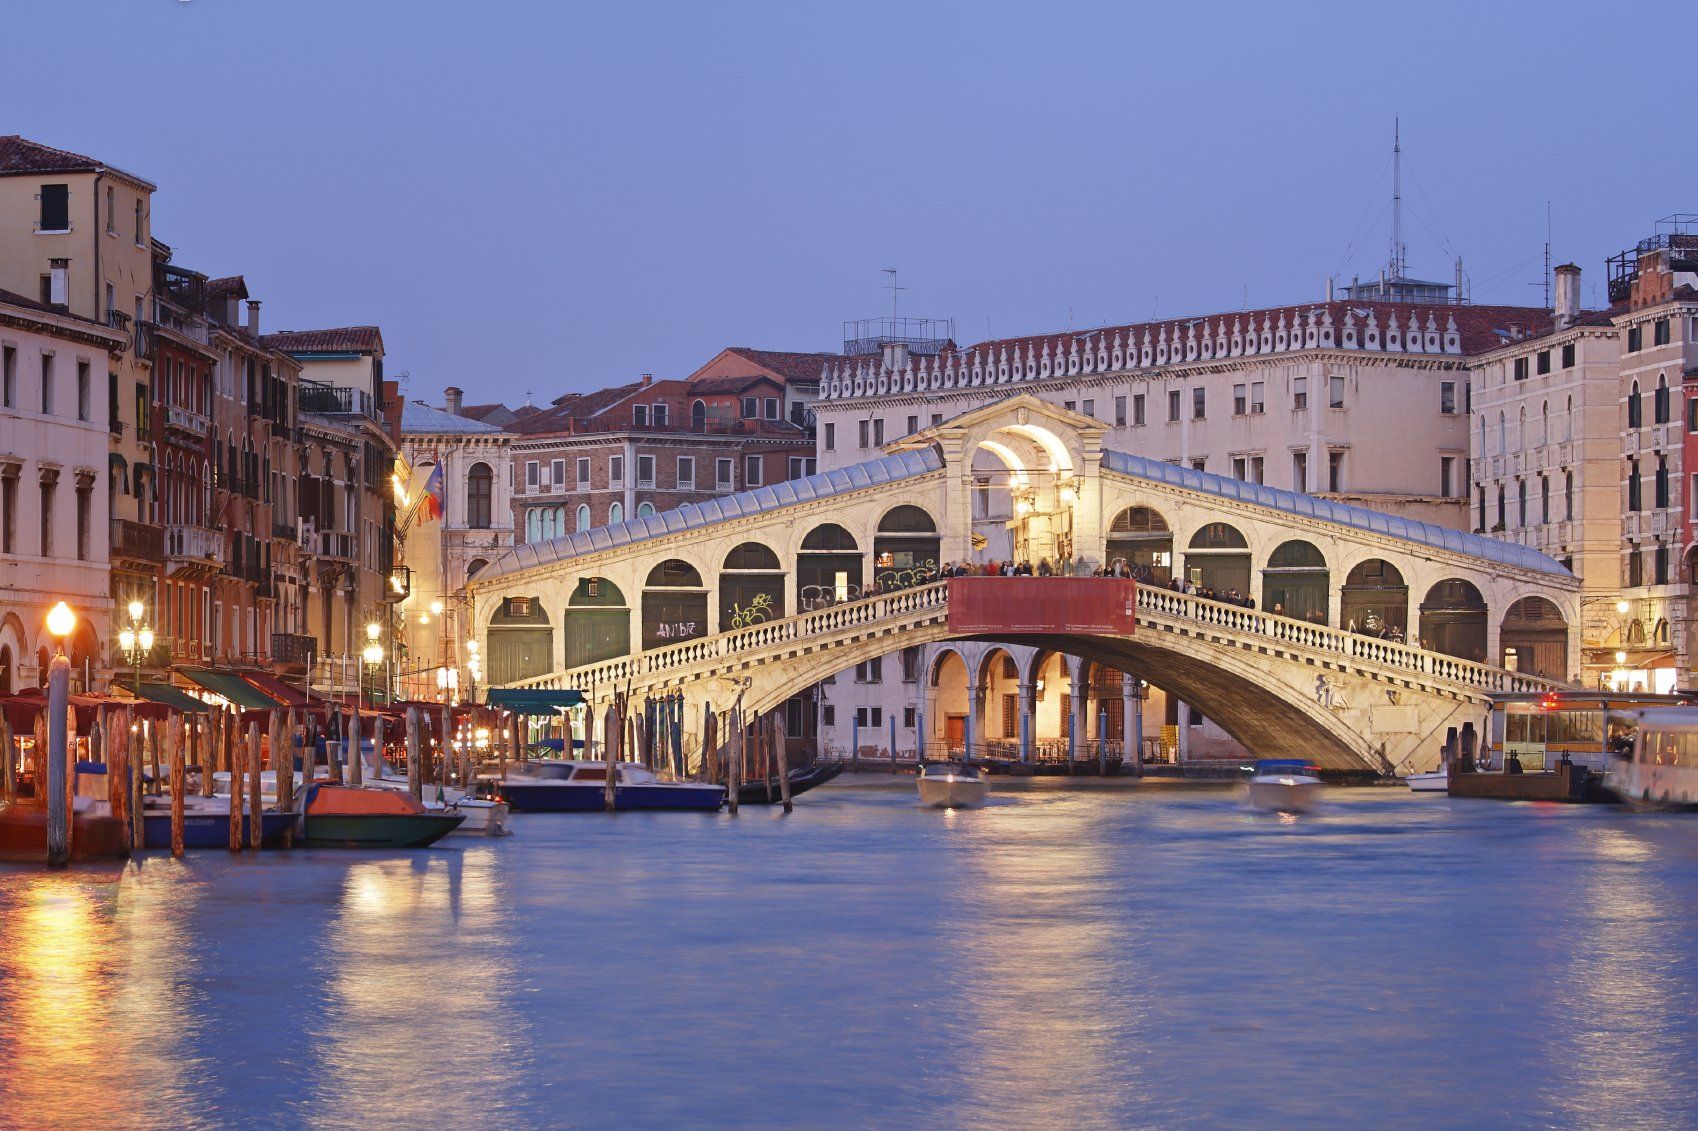 Die in der Dämmerung mit Booten auf dem Canale Grande in Venedig, Italien, beleuchtete Rialtobrücke spiegelt die jüngsten Entwicklungen im italienischen Immobilienrecht wider